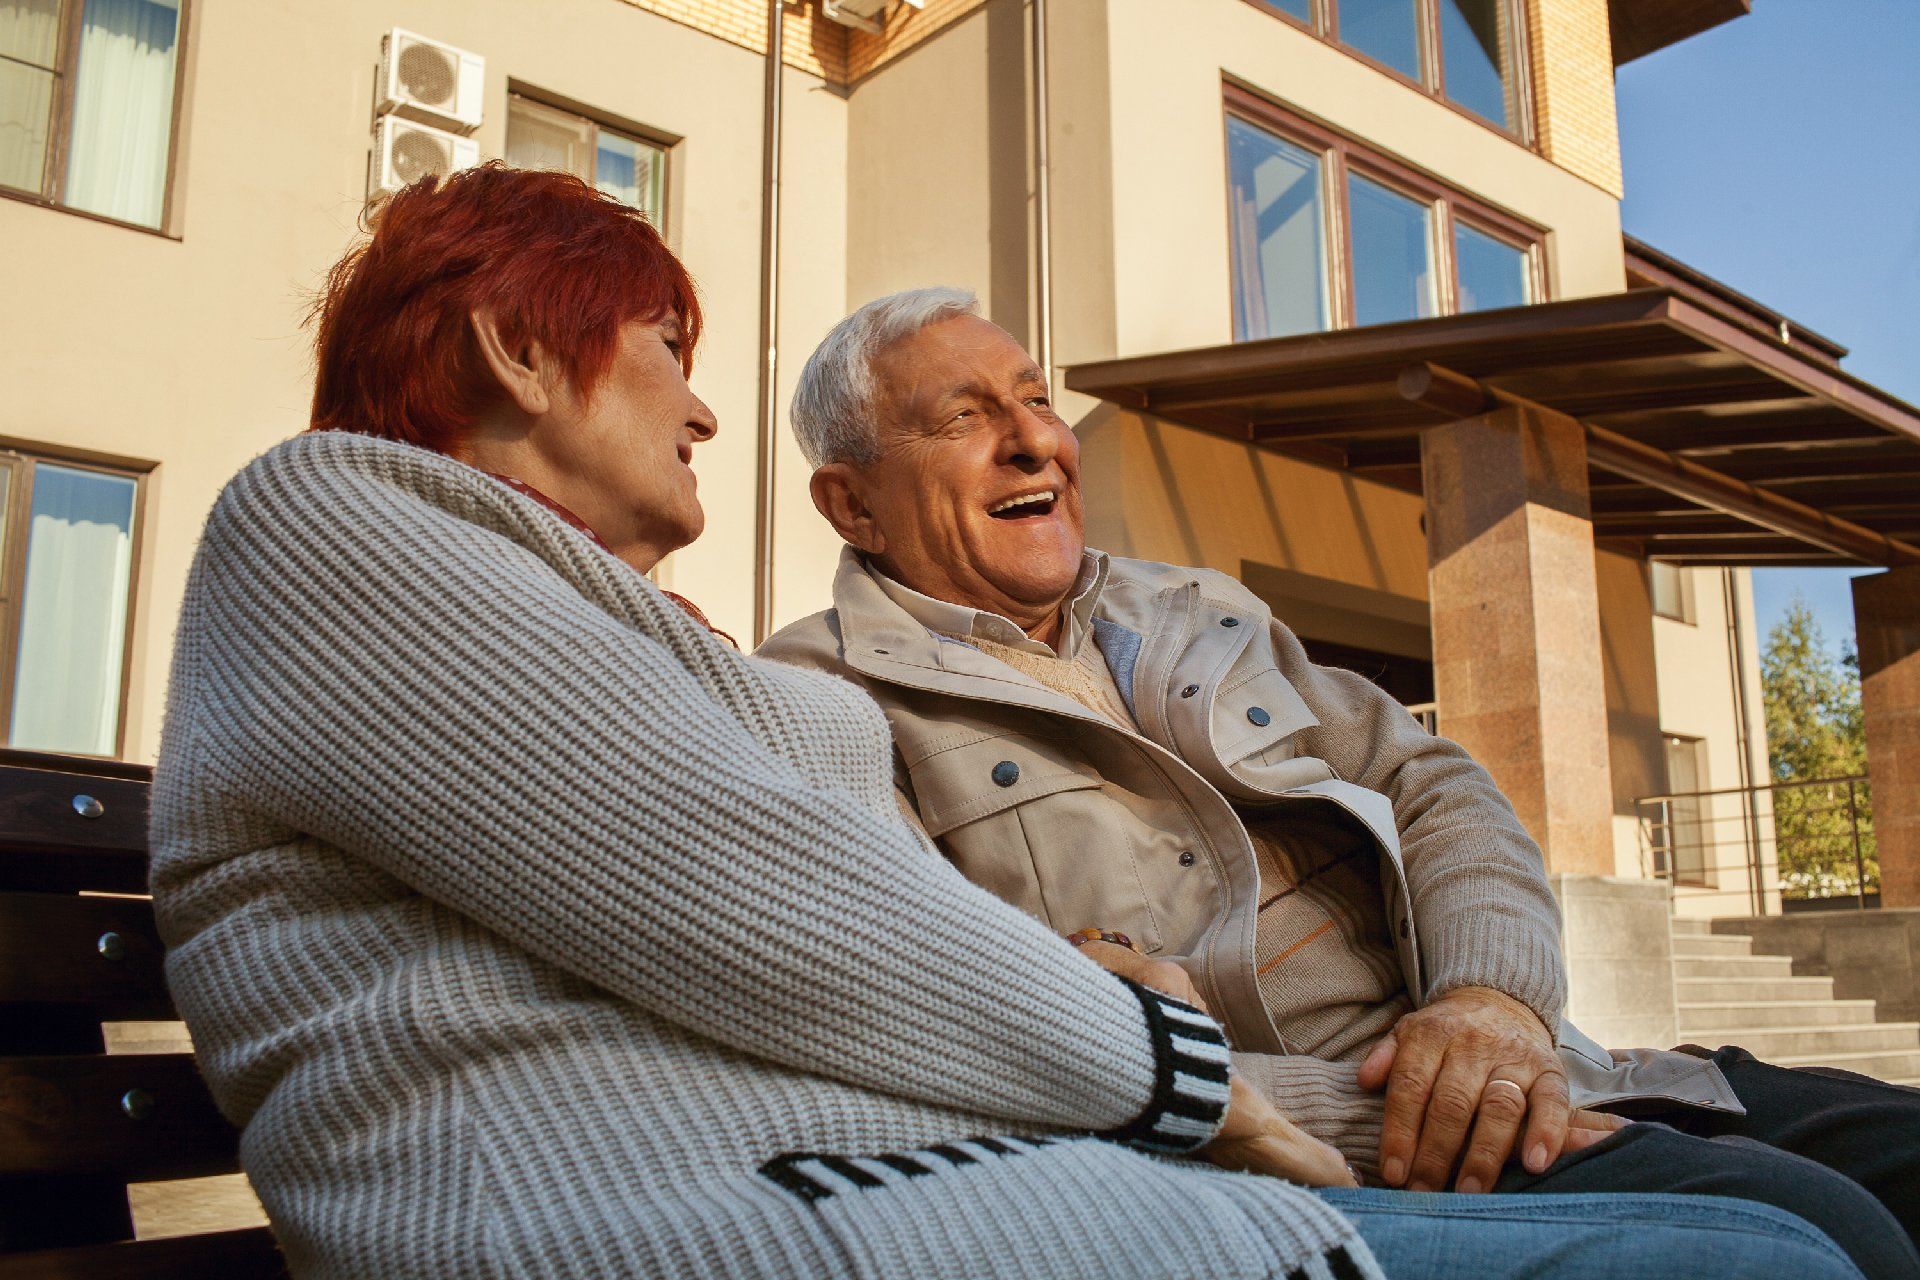 Во многих странах оформление родственника в дом престарелых - это норма. Мало того, многие люди предпенсионного возраста заранее начинают подыскивать для себя лучший пансионат для пожилых людей сами, ориентируясь на стоимость услуг и личные предпочтения. Идея того, что пенсионеру в частном доме престарелых удобнее и безопаснее, чем в одиночестве квартиры или частного дома, уже становится вполне приемлемой. Стоит отбросить стороннее мнение и оценить достоинства частного пансионата для престарелых и инвалидов беспристрастно. В числе лучших по Ленинградской области - дом для пожилых людей "Долгожители" в Лесогорском. 5 причин выбрать частный пансионат В пылу споров о том, что предпочесть, сиделку на дому или дом престарелых, многие упускают их виду очень важное обстоятельство - уровень квалификации сиделки. Если это человек с опытом и медицинским образованием, то он, скорее всего, будет заниматься только уходом и процедурами, не отвлекаясь на сторонние вопросы. И стоить такие услуги будут дорого. Сиделка без опыта, вероятно, будет согласна исполнять не только прямые обязанности, но еще и заниматься бытовыми вопросами, такими как стирка, готовка, закупка продуктов. В этом случае перечень дел шире, а значит, и внимания подопечному меньше. И самое главное, сиделка тоже человек, в ее жизни могут возникнуть непредвиденные обстоятельства и пенсионер останется без присмотра. А пенсионеру с деменцией или другими возрастными нарушениями этого достаточно, чтобы попасть в беду. Еще хуже сложится положение, если старик лежачий. В частном доме-интернате для престарелых людей такого положения не может быть по определению. Там работает штат квалифицированных сотрудников, которые прошли соответствующую подготовку, имеют опыт работы с постояльцами разной степени дееспособности, знают особенности возрастной психологии. Достоинства размещения пенсионера за пенсию с доплатой в частном пансионате: 	высокий уровень комфорта; 	безопасность; 	профессиональный присмотр и уход; 	адаптация помещений под требования и возможности возрастных